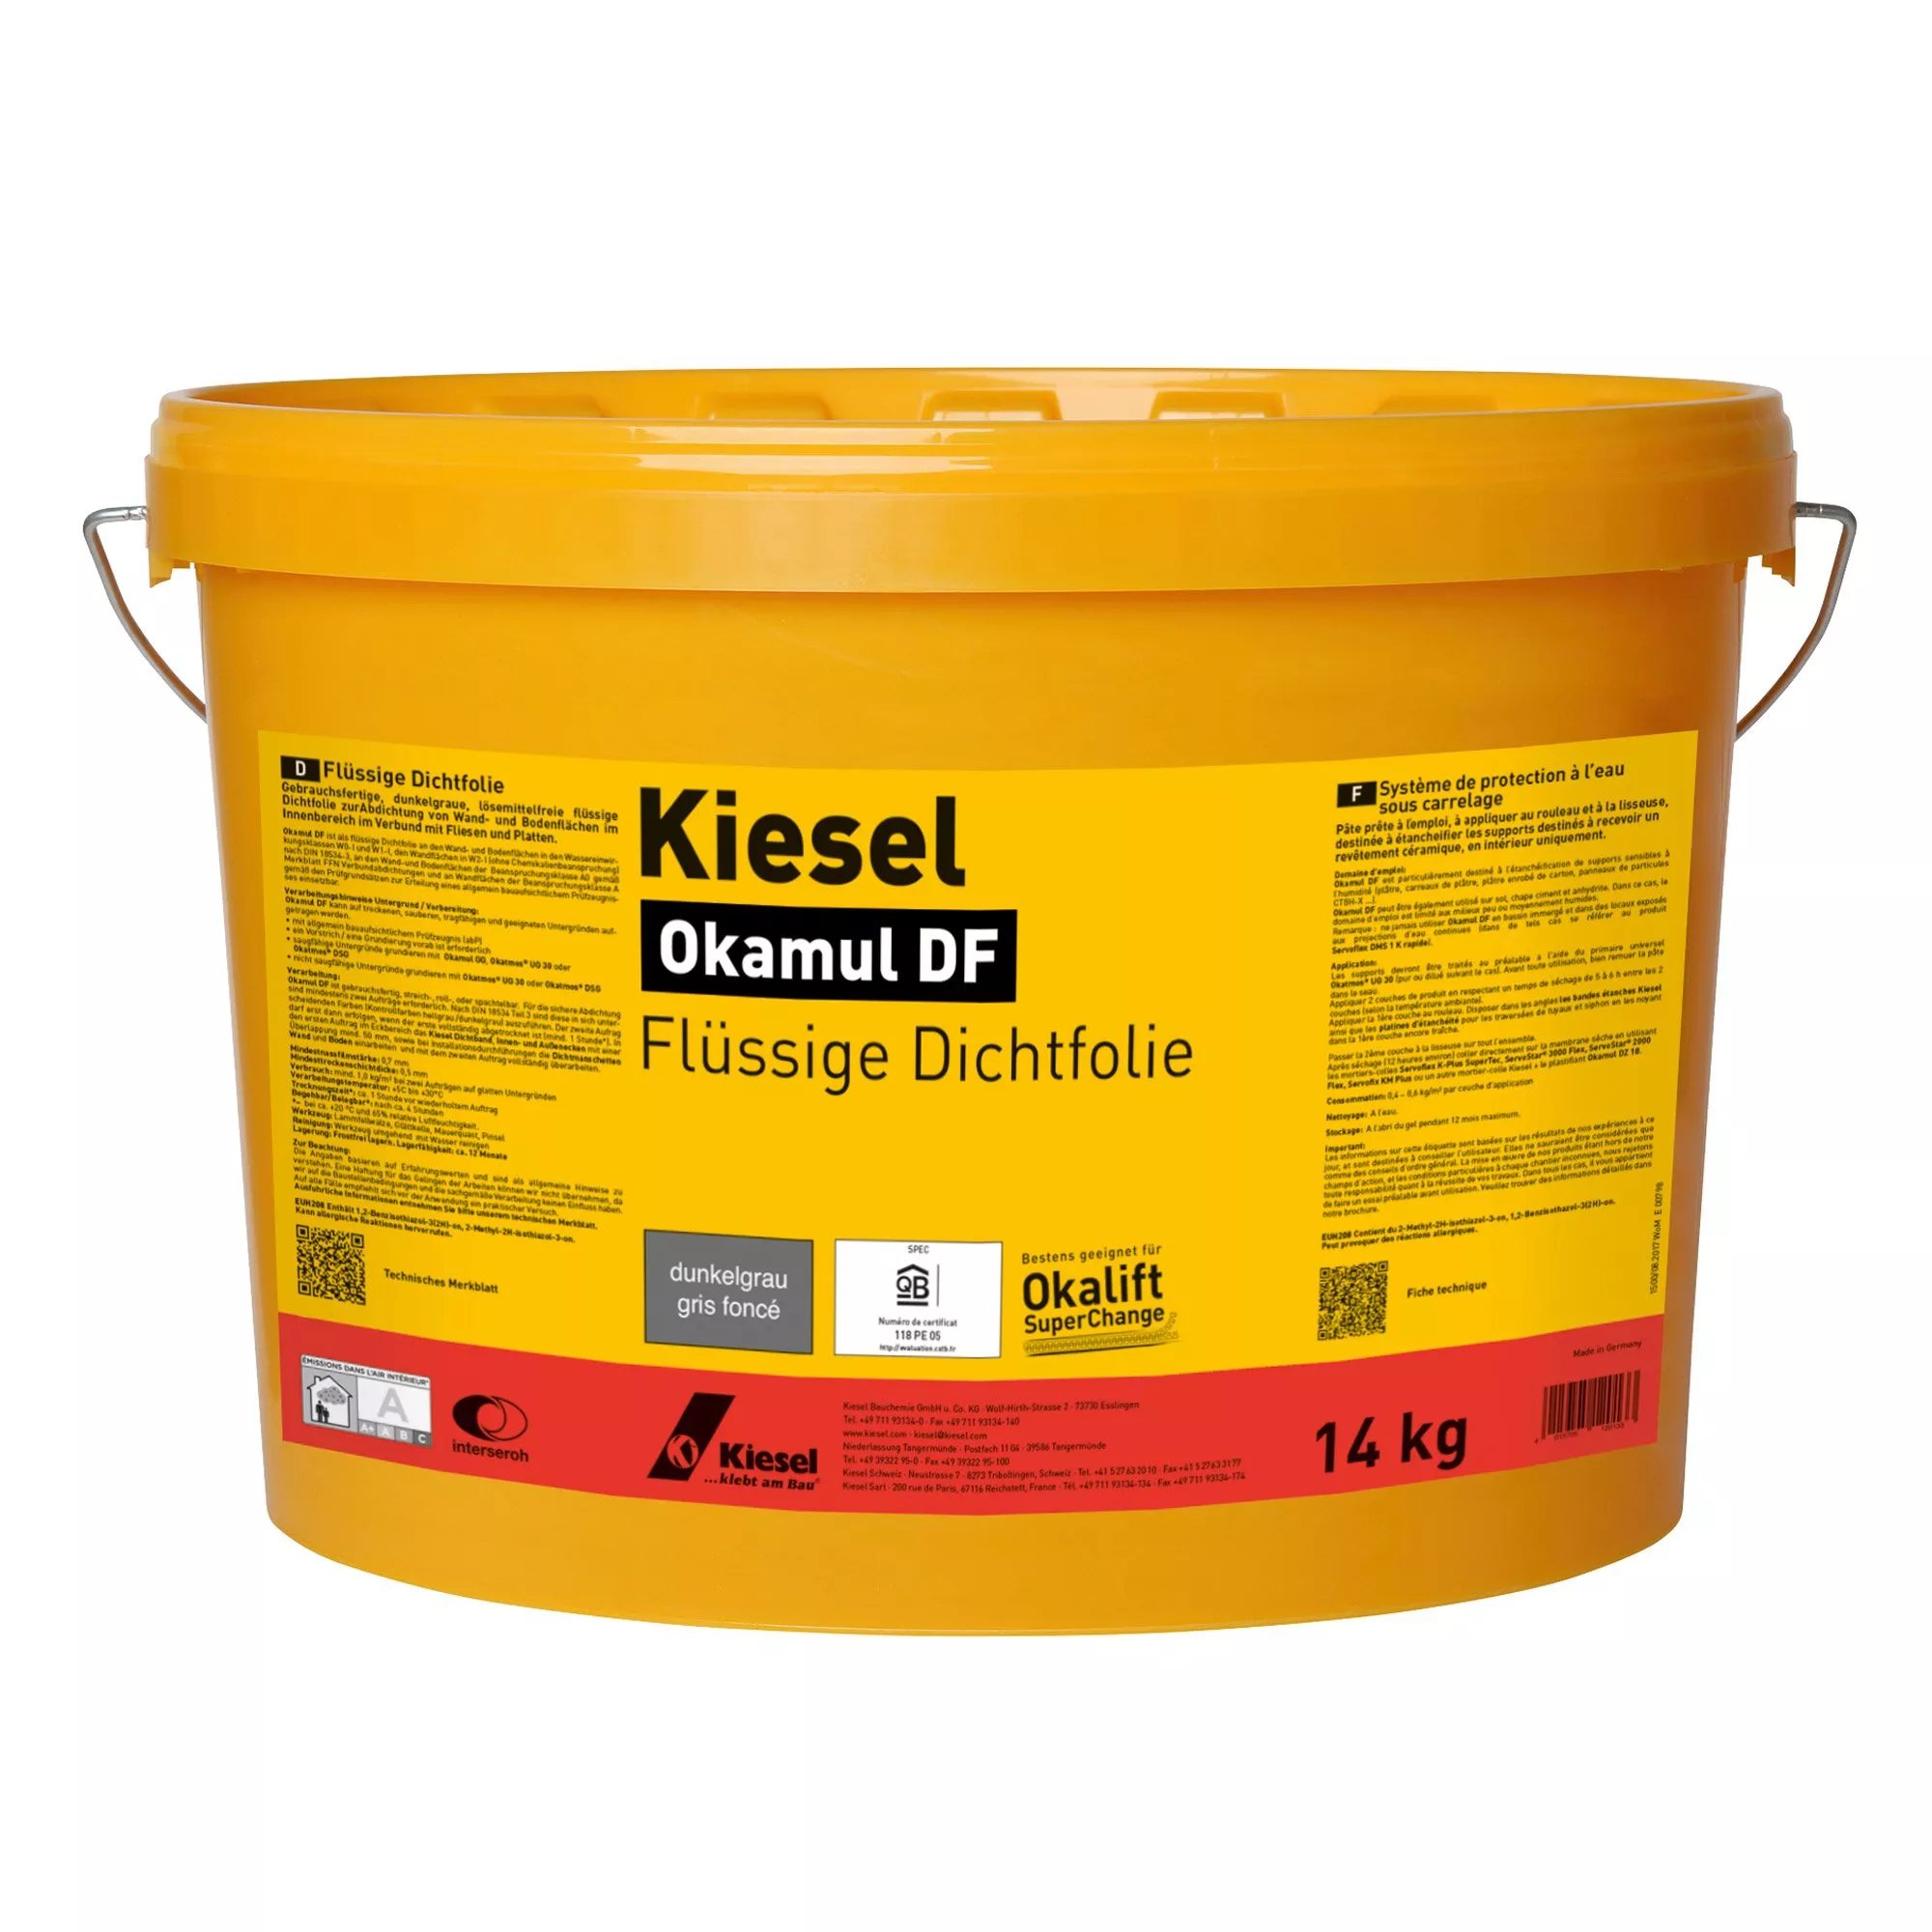 Kiesel Okamul DF - Filme selante líquido cinza escuro (14KG)